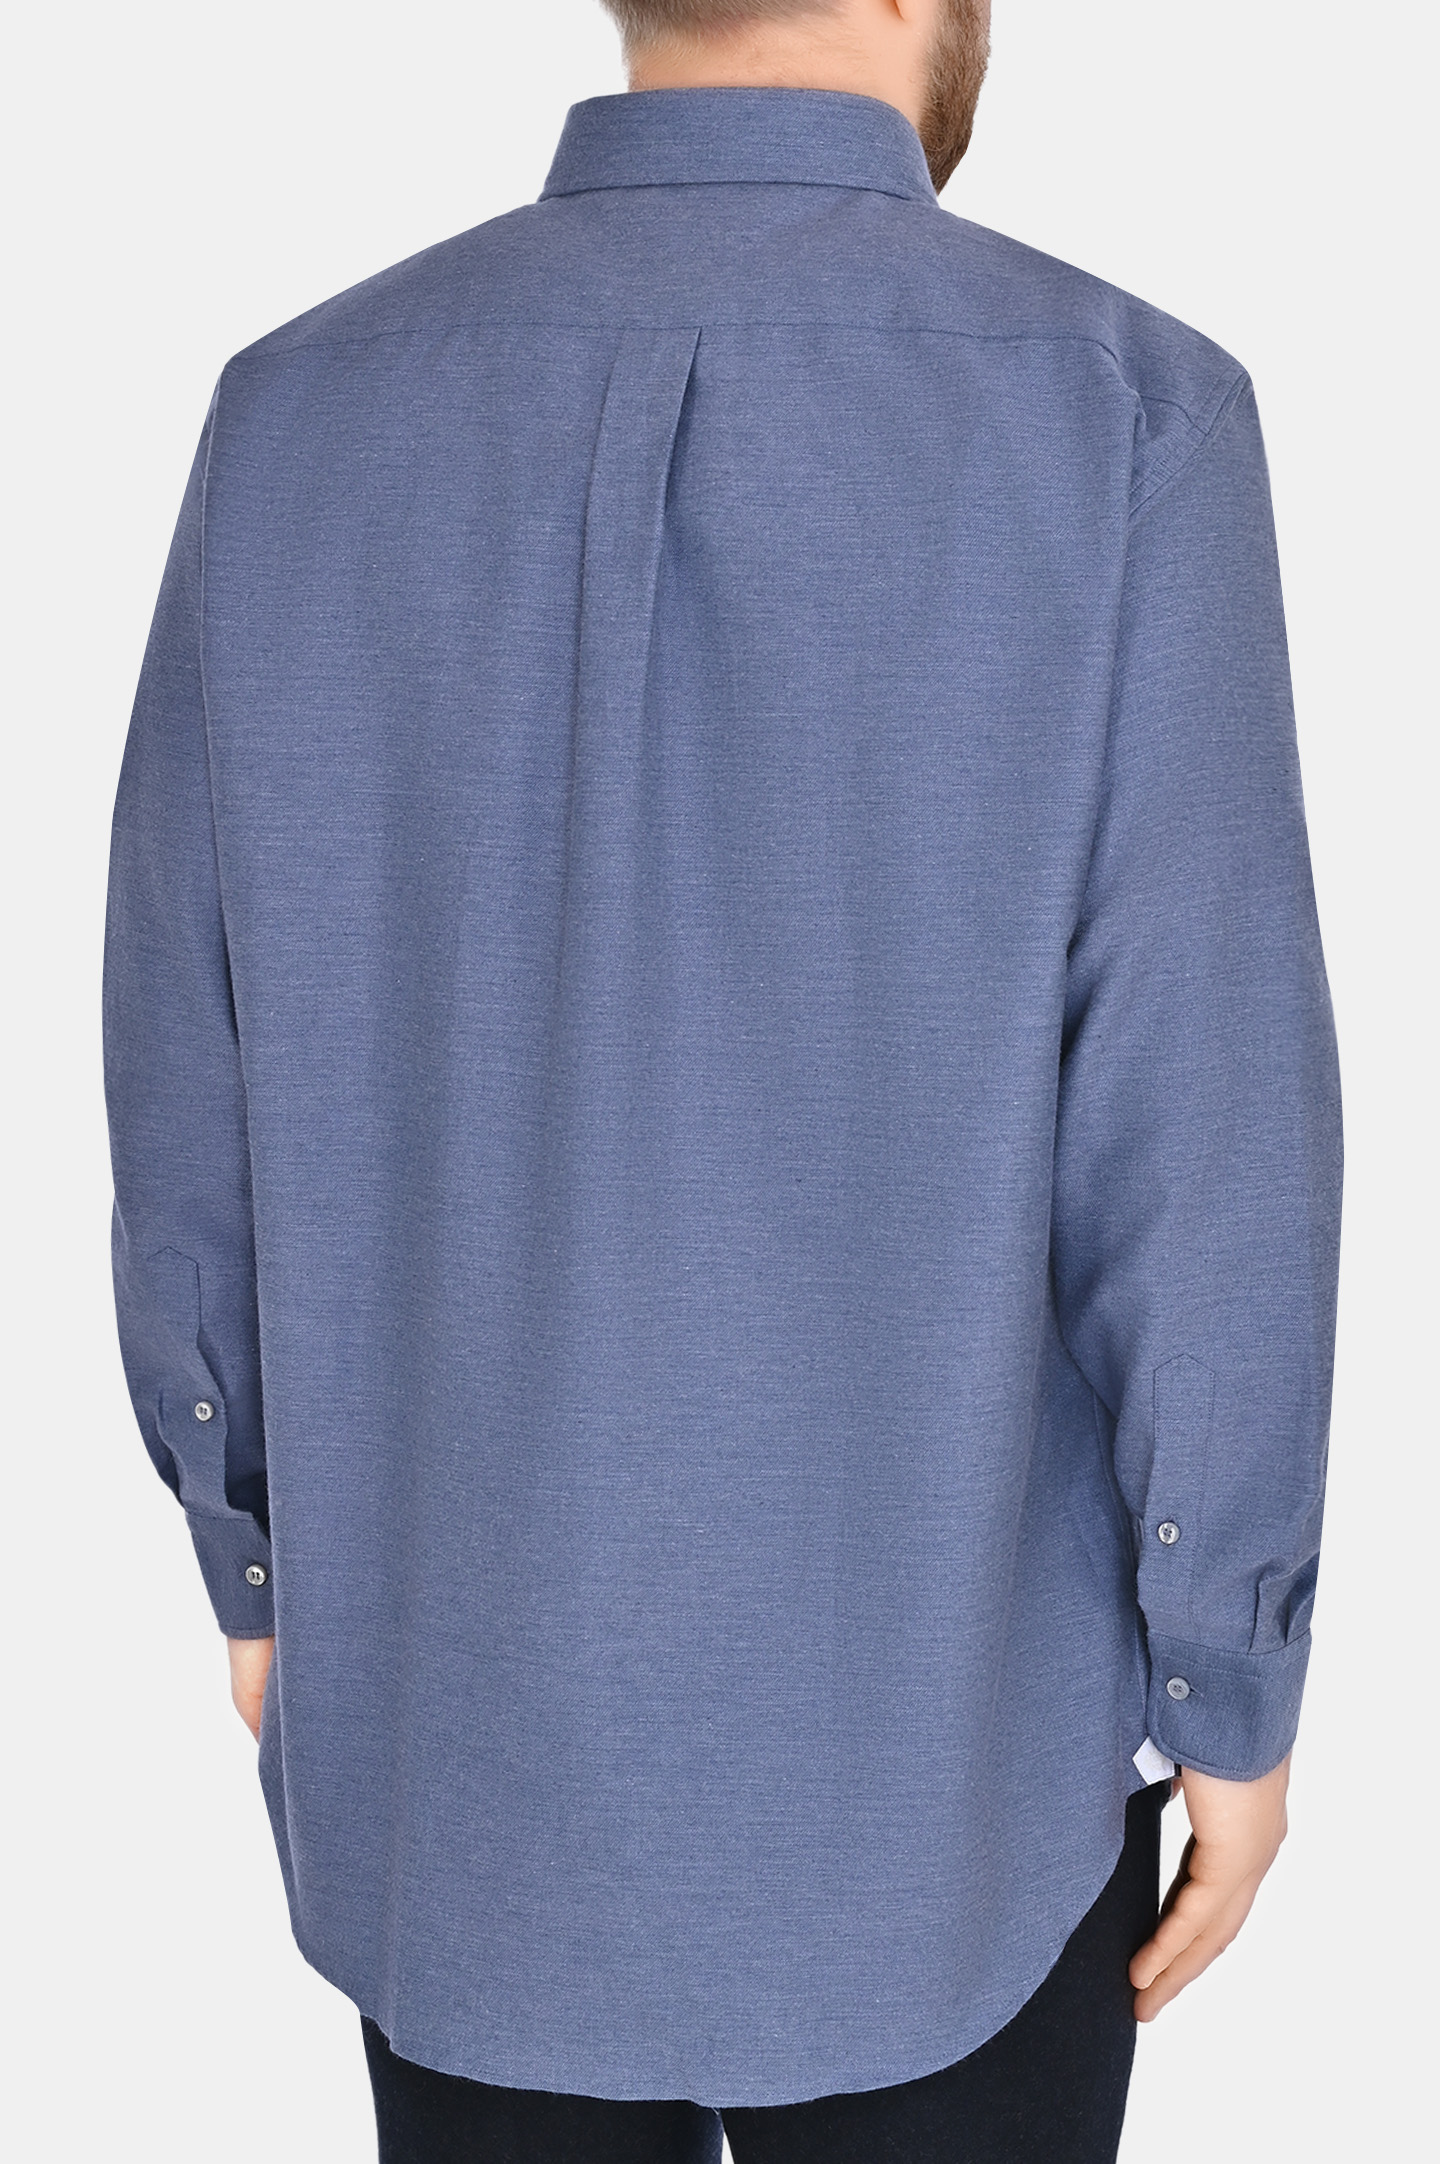 Рубашка из хлопка и кашемира LORO PIANA FAO0362 , цвет: Голубой, Мужской